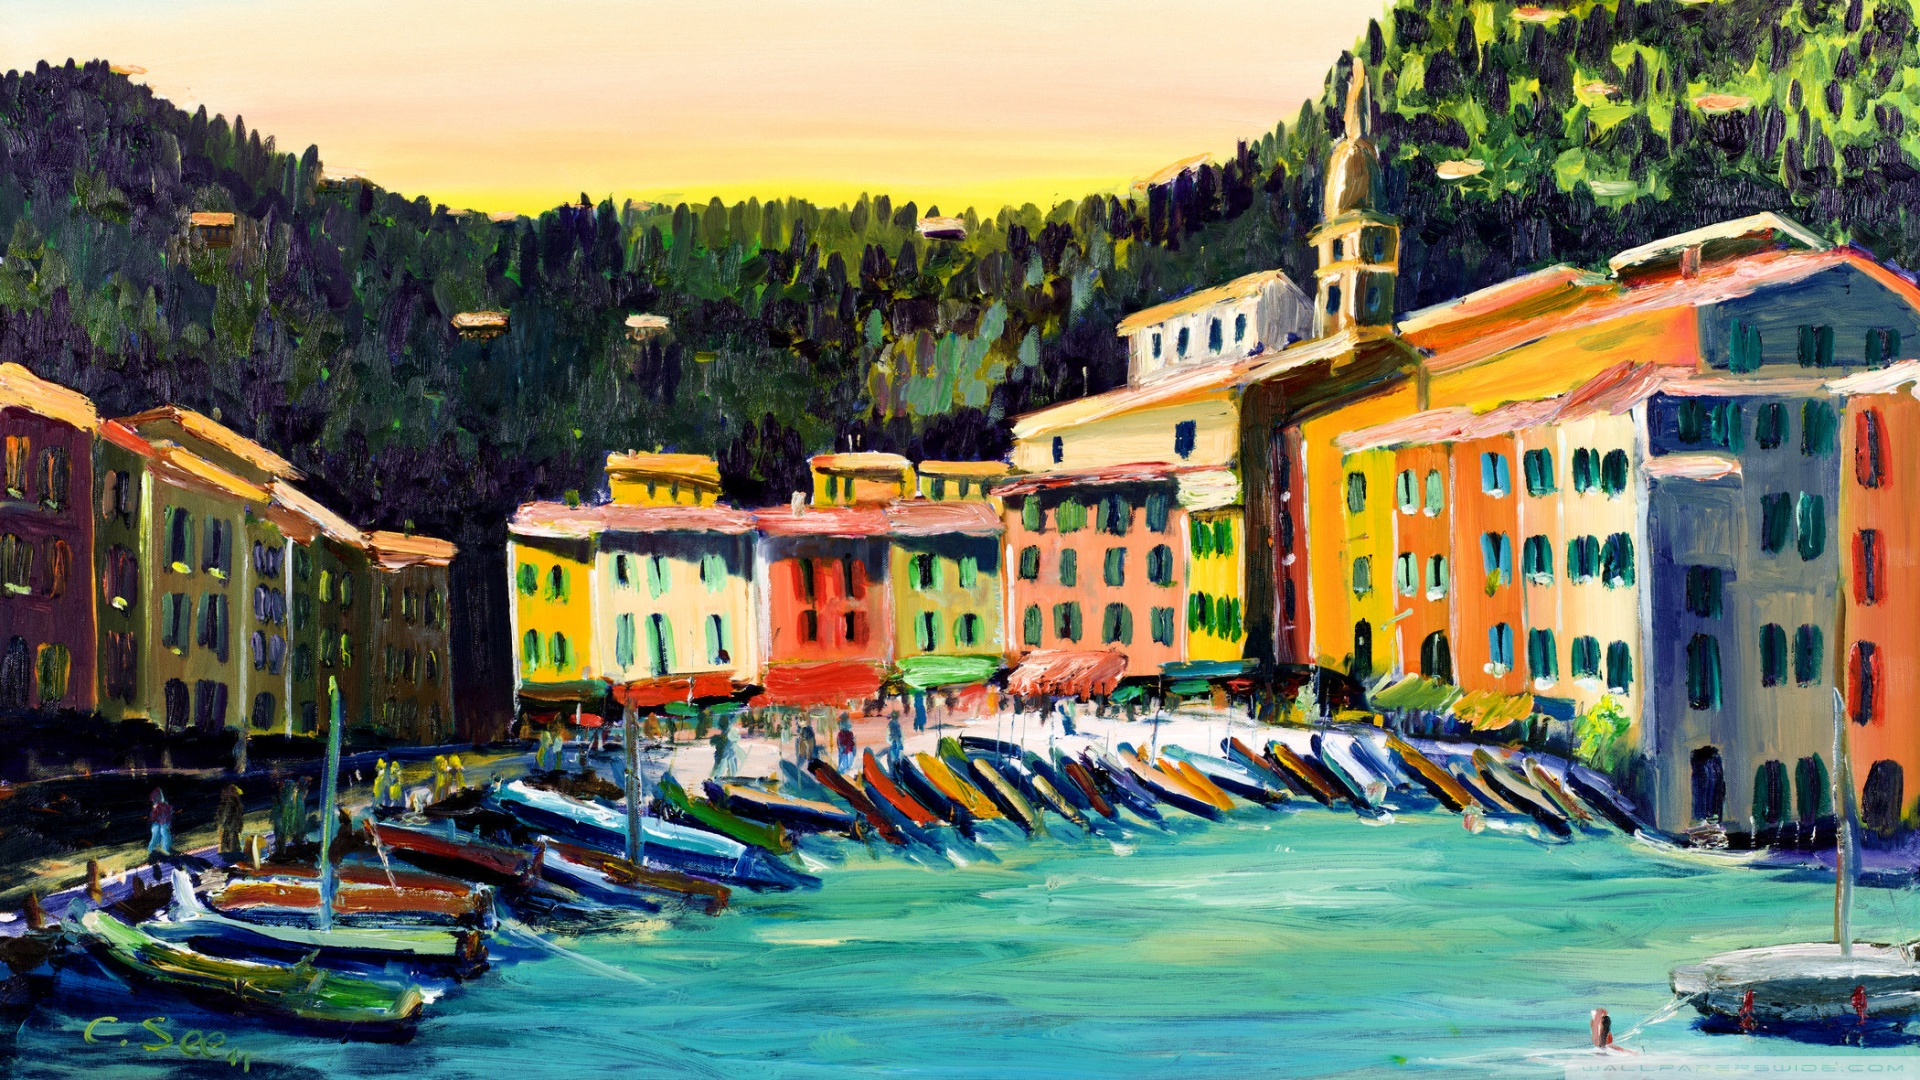 Hình nền máy tính sơn dầu Portofino là sự kết hợp tuyệt vời giữa nghệ thuật và công nghệ. Bạn sẽ cảm thấy như đang được sống trong một bức tranh đích thực với sắc màu đẹp lung linh, đem lại một không gian sống thoải mái và độc đáo.